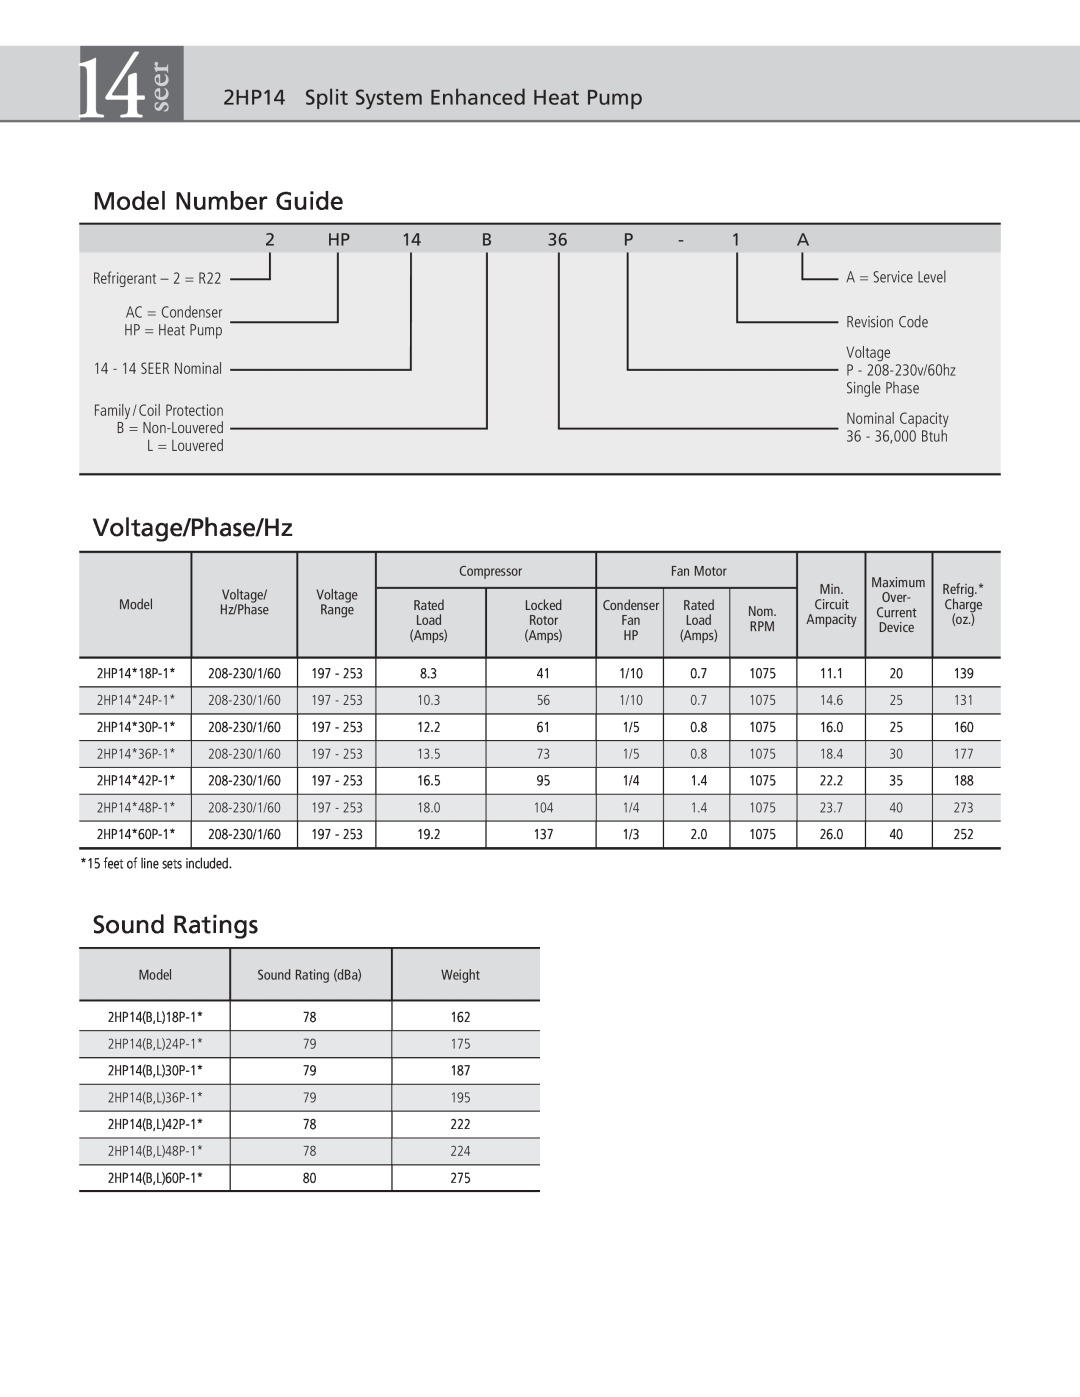 Ducane (HVAC) warranty seer, Model Number Guide, Voltage/Phase/Hz, Sound Ratings, 2HP14 Split System Enhanced Heat Pump 